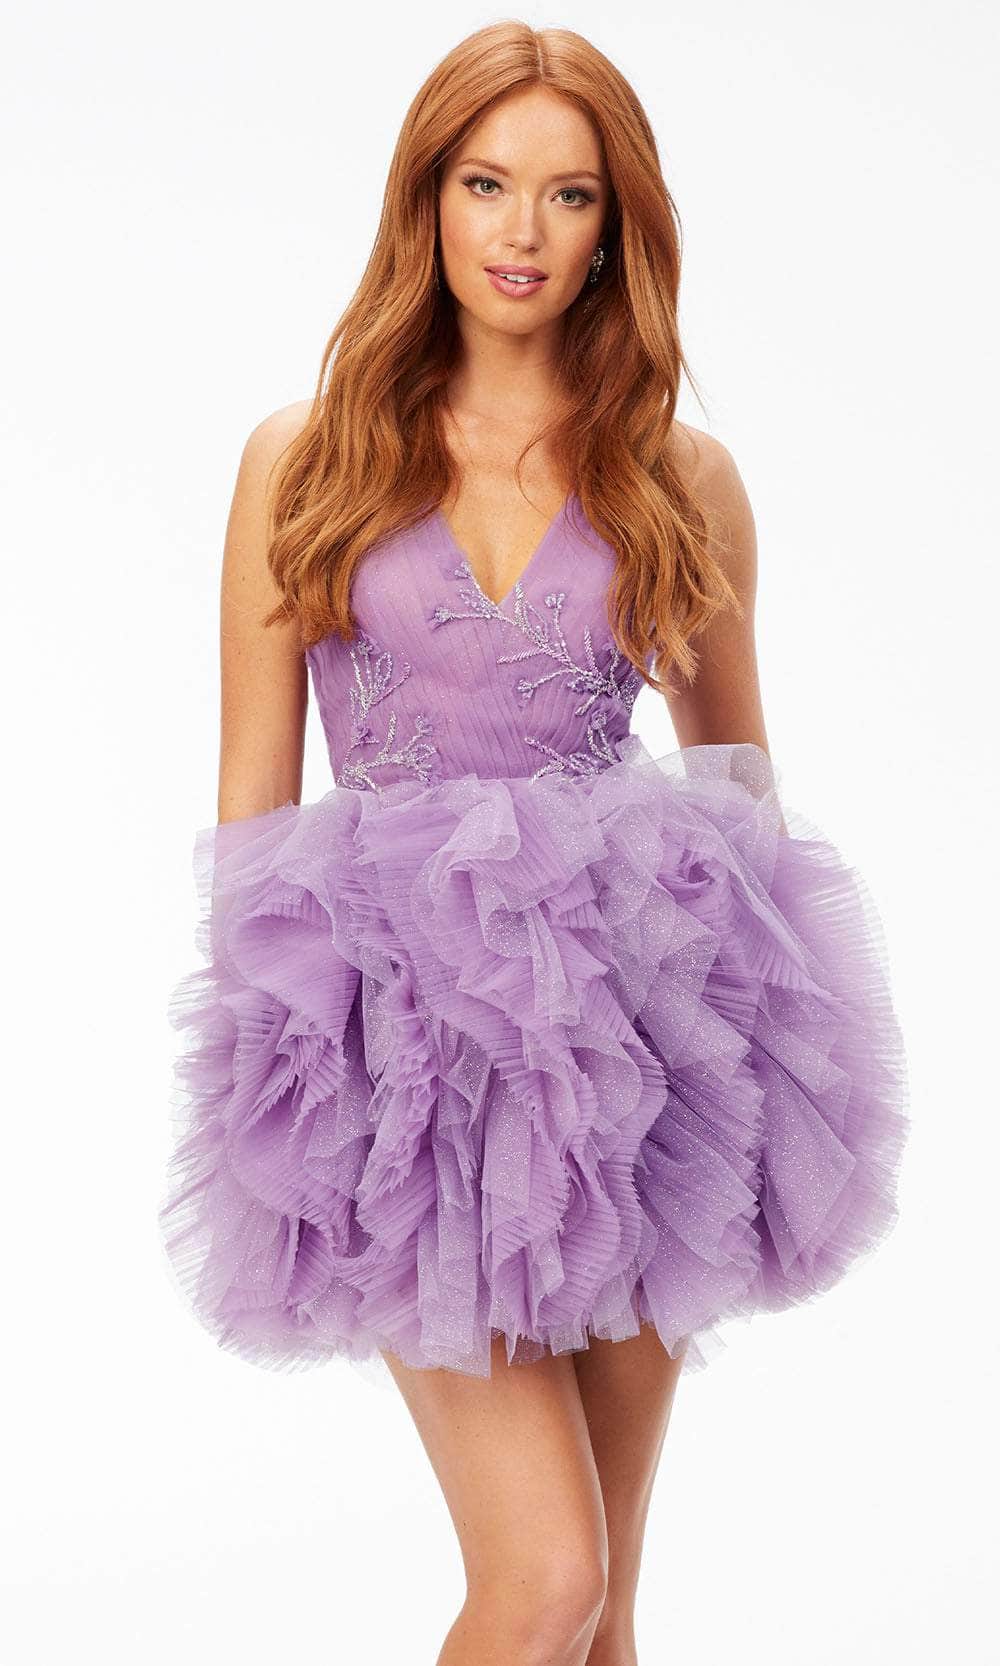 Ashley Lauren 4546 - Ruffled Skirt Cocktail Dress
